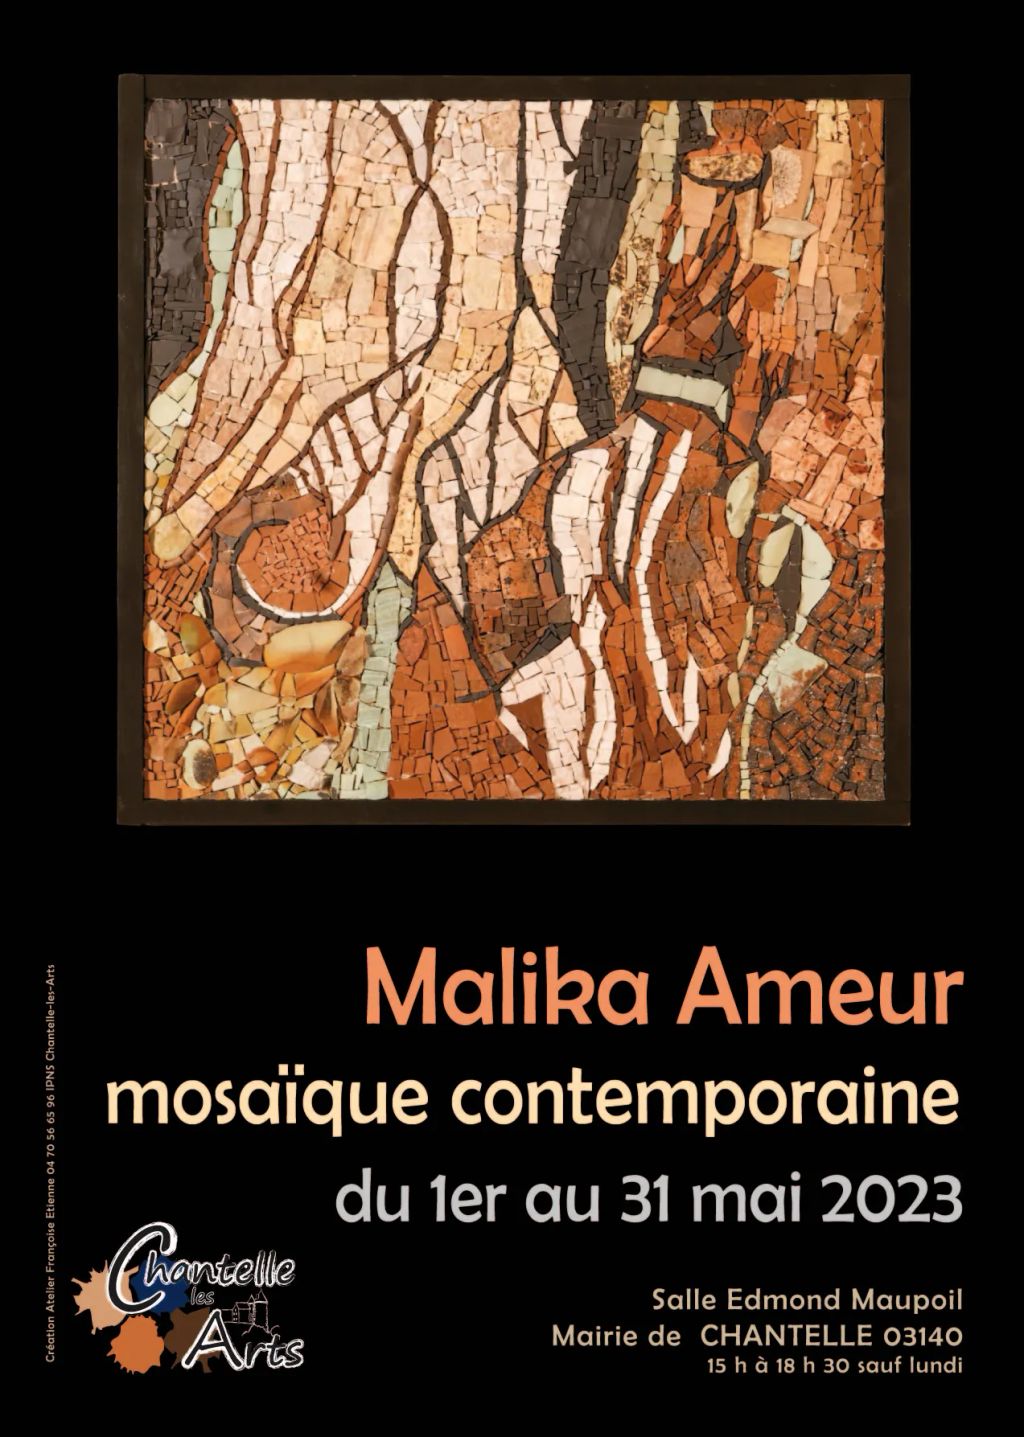 Les mosaïques de Malika Ameur